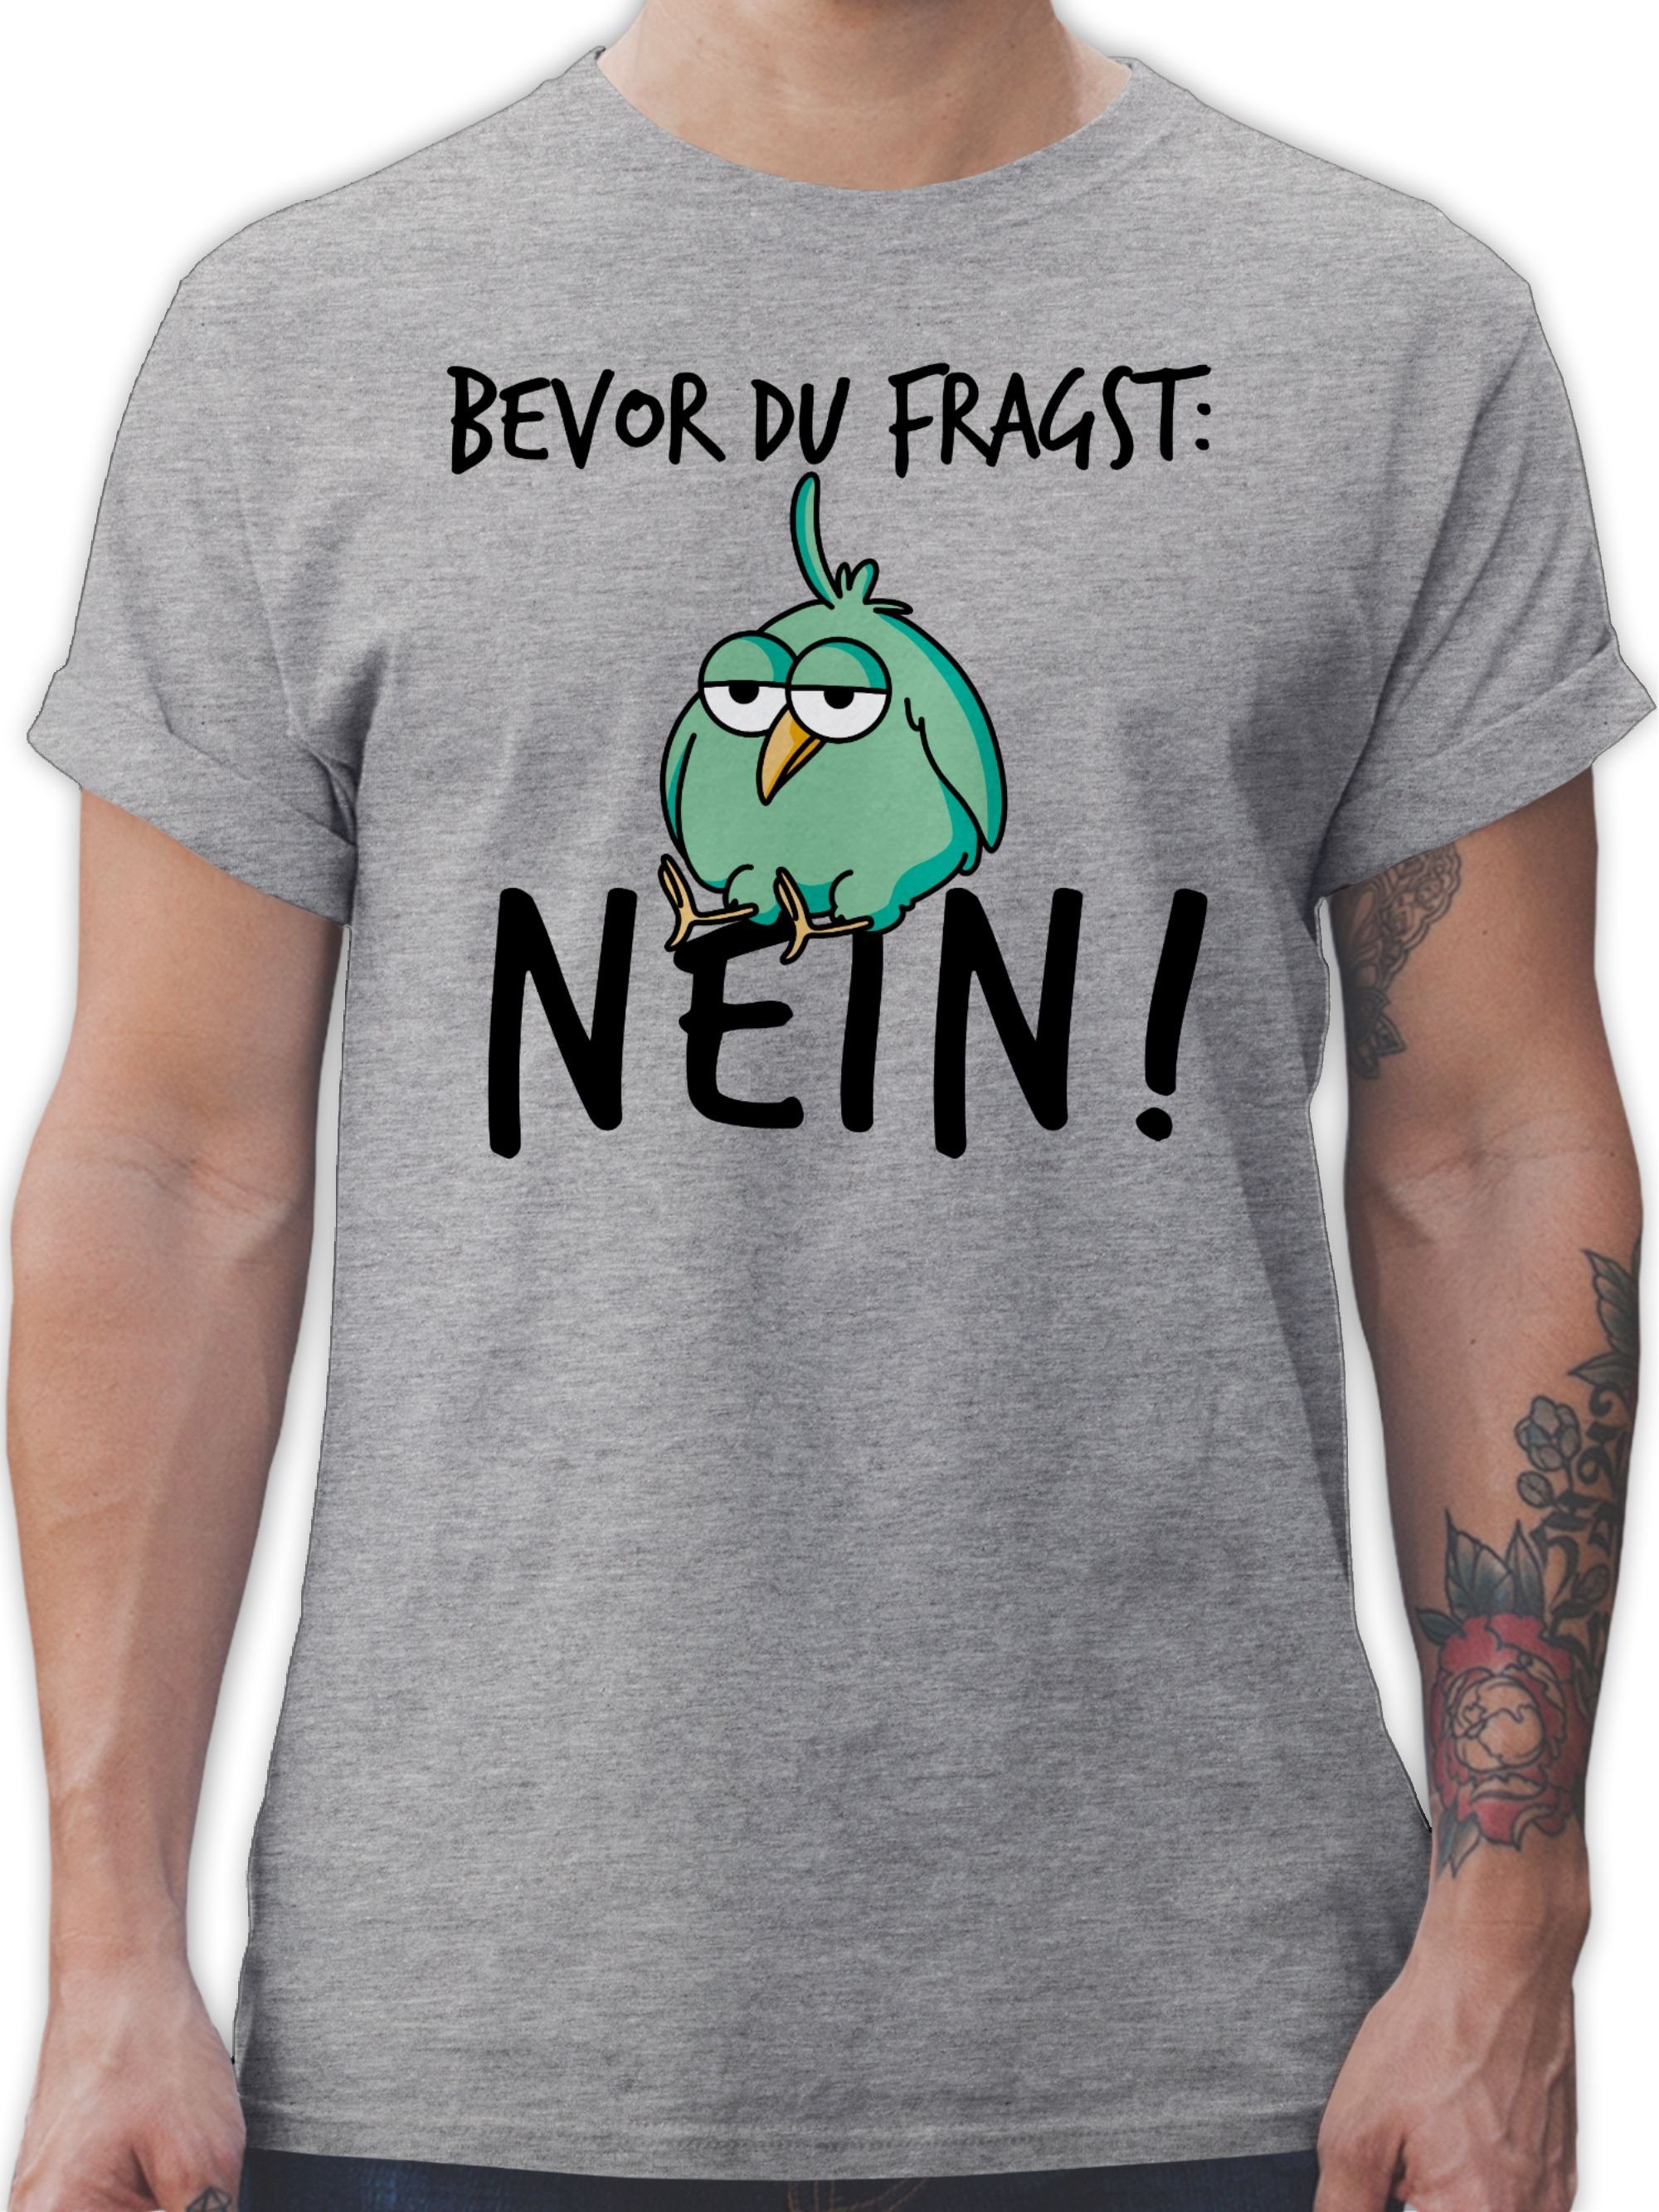 Grau Statement mit Kollegen Sprüche du fragst meliert Lustig 2 - Geschenk Bevor Spruch T-Shirt Shirtracer Nein